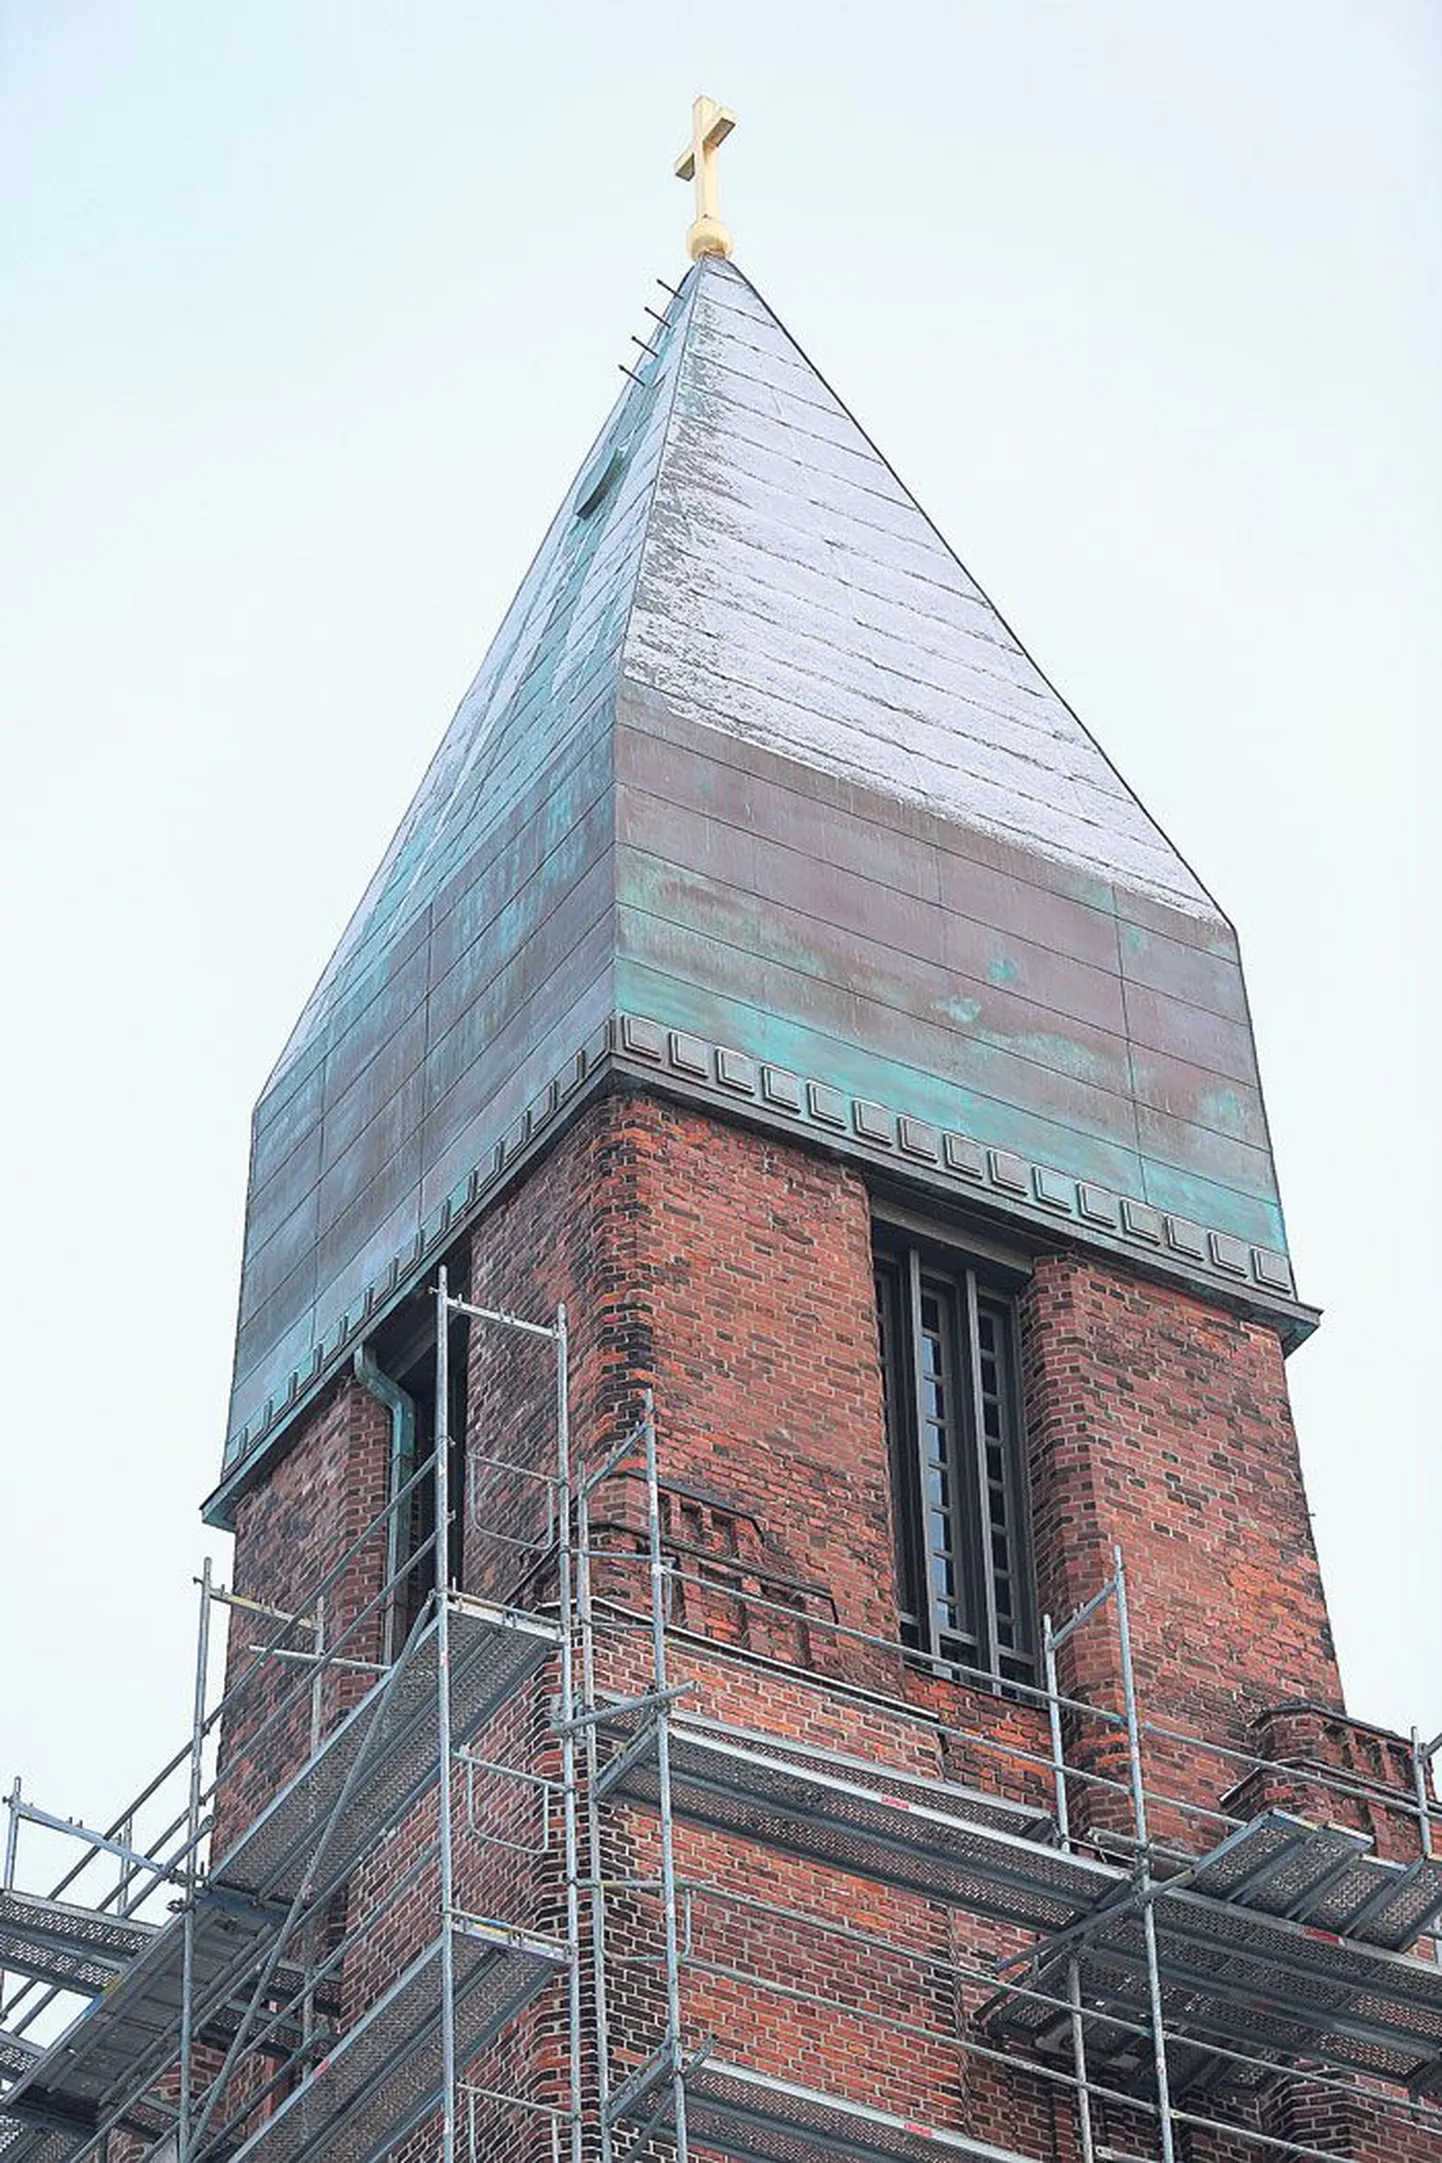 Pauluse kiriku taastatava tornikiivri alumist osa kaunistab nüüd esimest korda muster, mille hoone arhitekt Eliel Saarinen kavandas sinna ligi sada aastat tagasi.